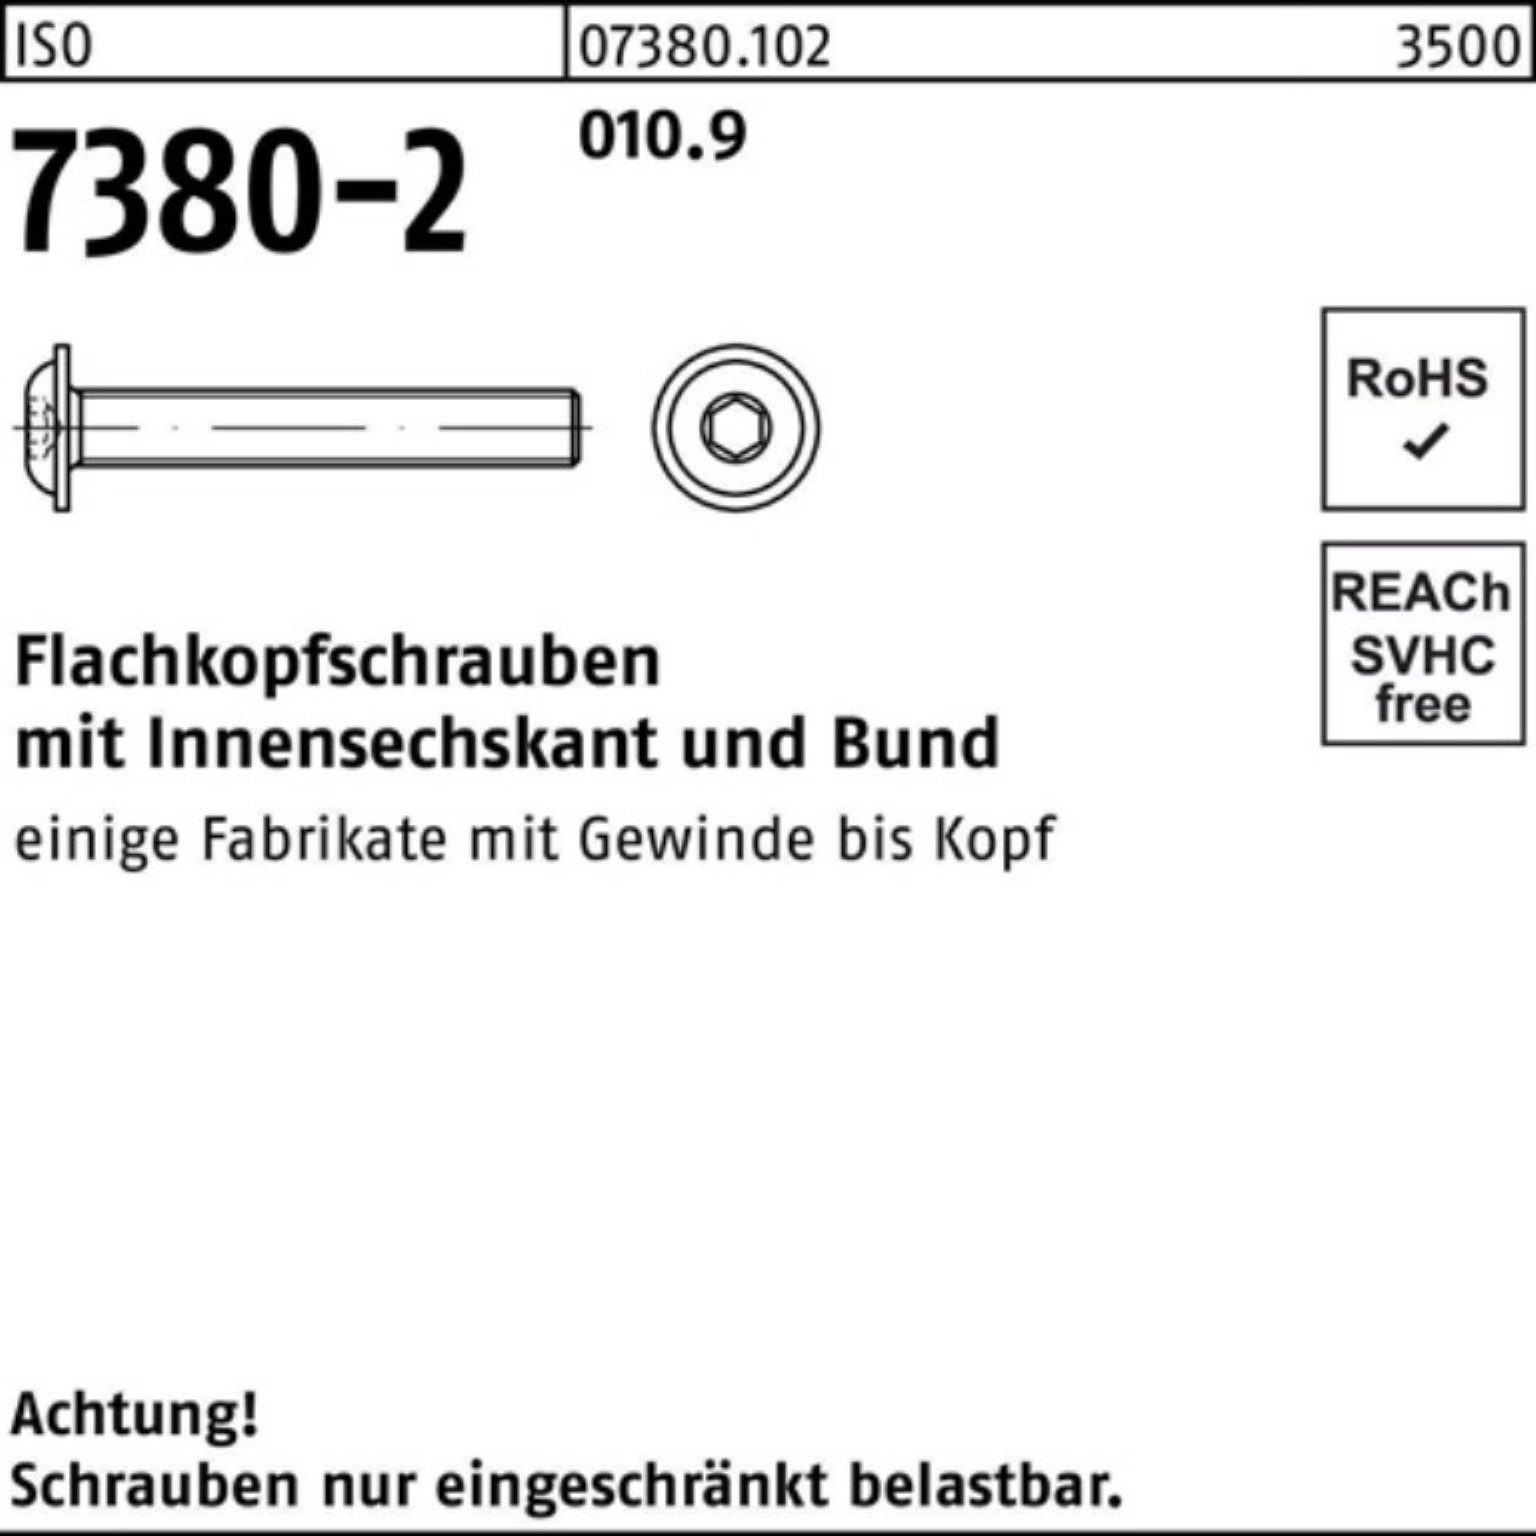 Reyher Schraube 200er 010.9 M8x 20 35 ISO Flachkopfschraube Bund/Innen-6kt 7380-2 Pack